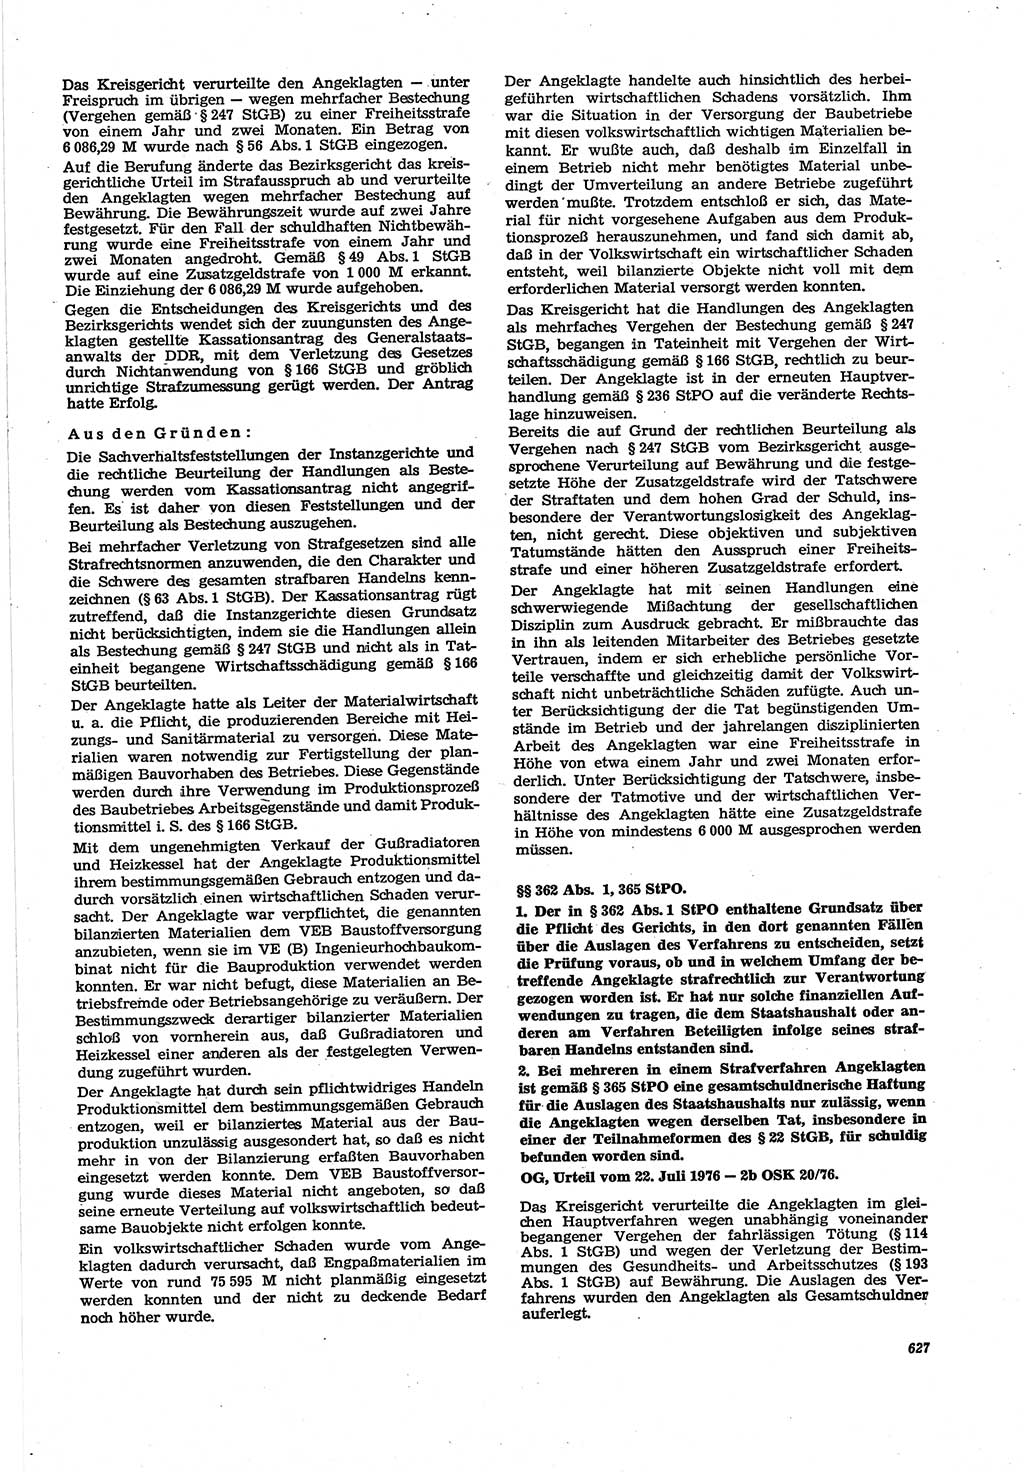 Neue Justiz (NJ), Zeitschrift für Recht und Rechtswissenschaft [Deutsche Demokratische Republik (DDR)], 30. Jahrgang 1976, Seite 627 (NJ DDR 1976, S. 627)